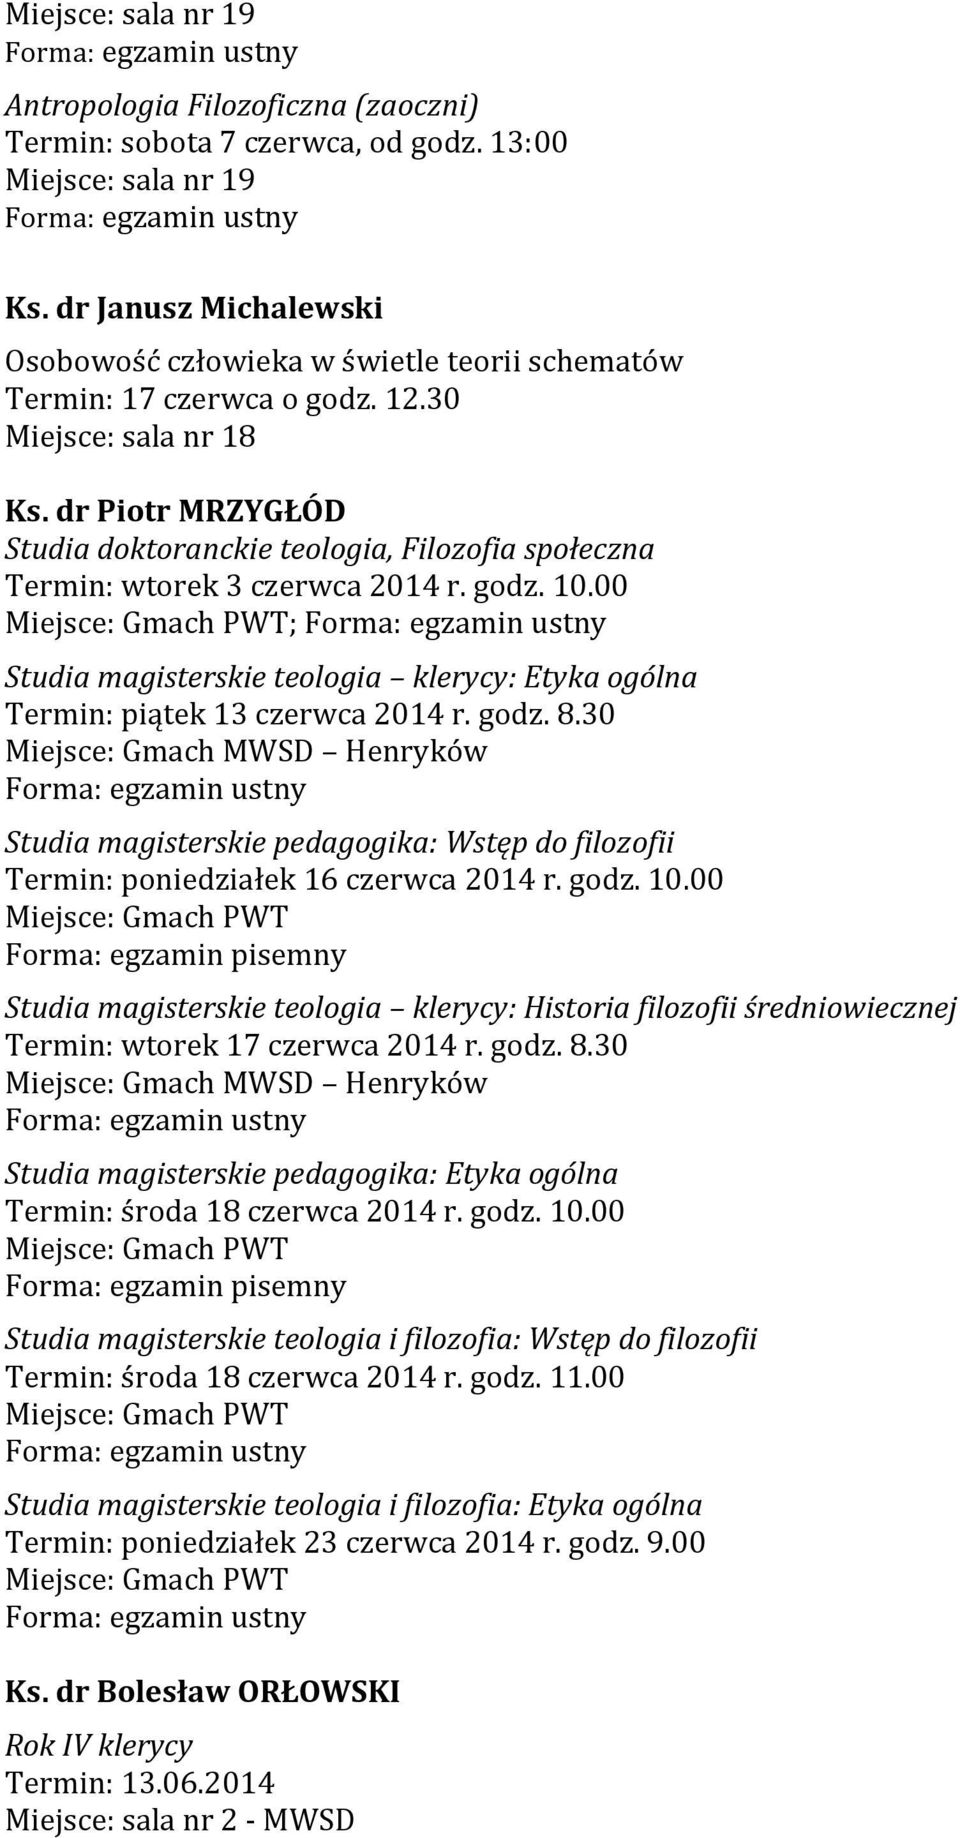 godz. 8.30 Miejsce: Gmach MWSD Henryków Studia magisterskie pedagogika: Wstęp do filozofii Termin: poniedziałek 16 czerwca 2014 r. godz. 10.